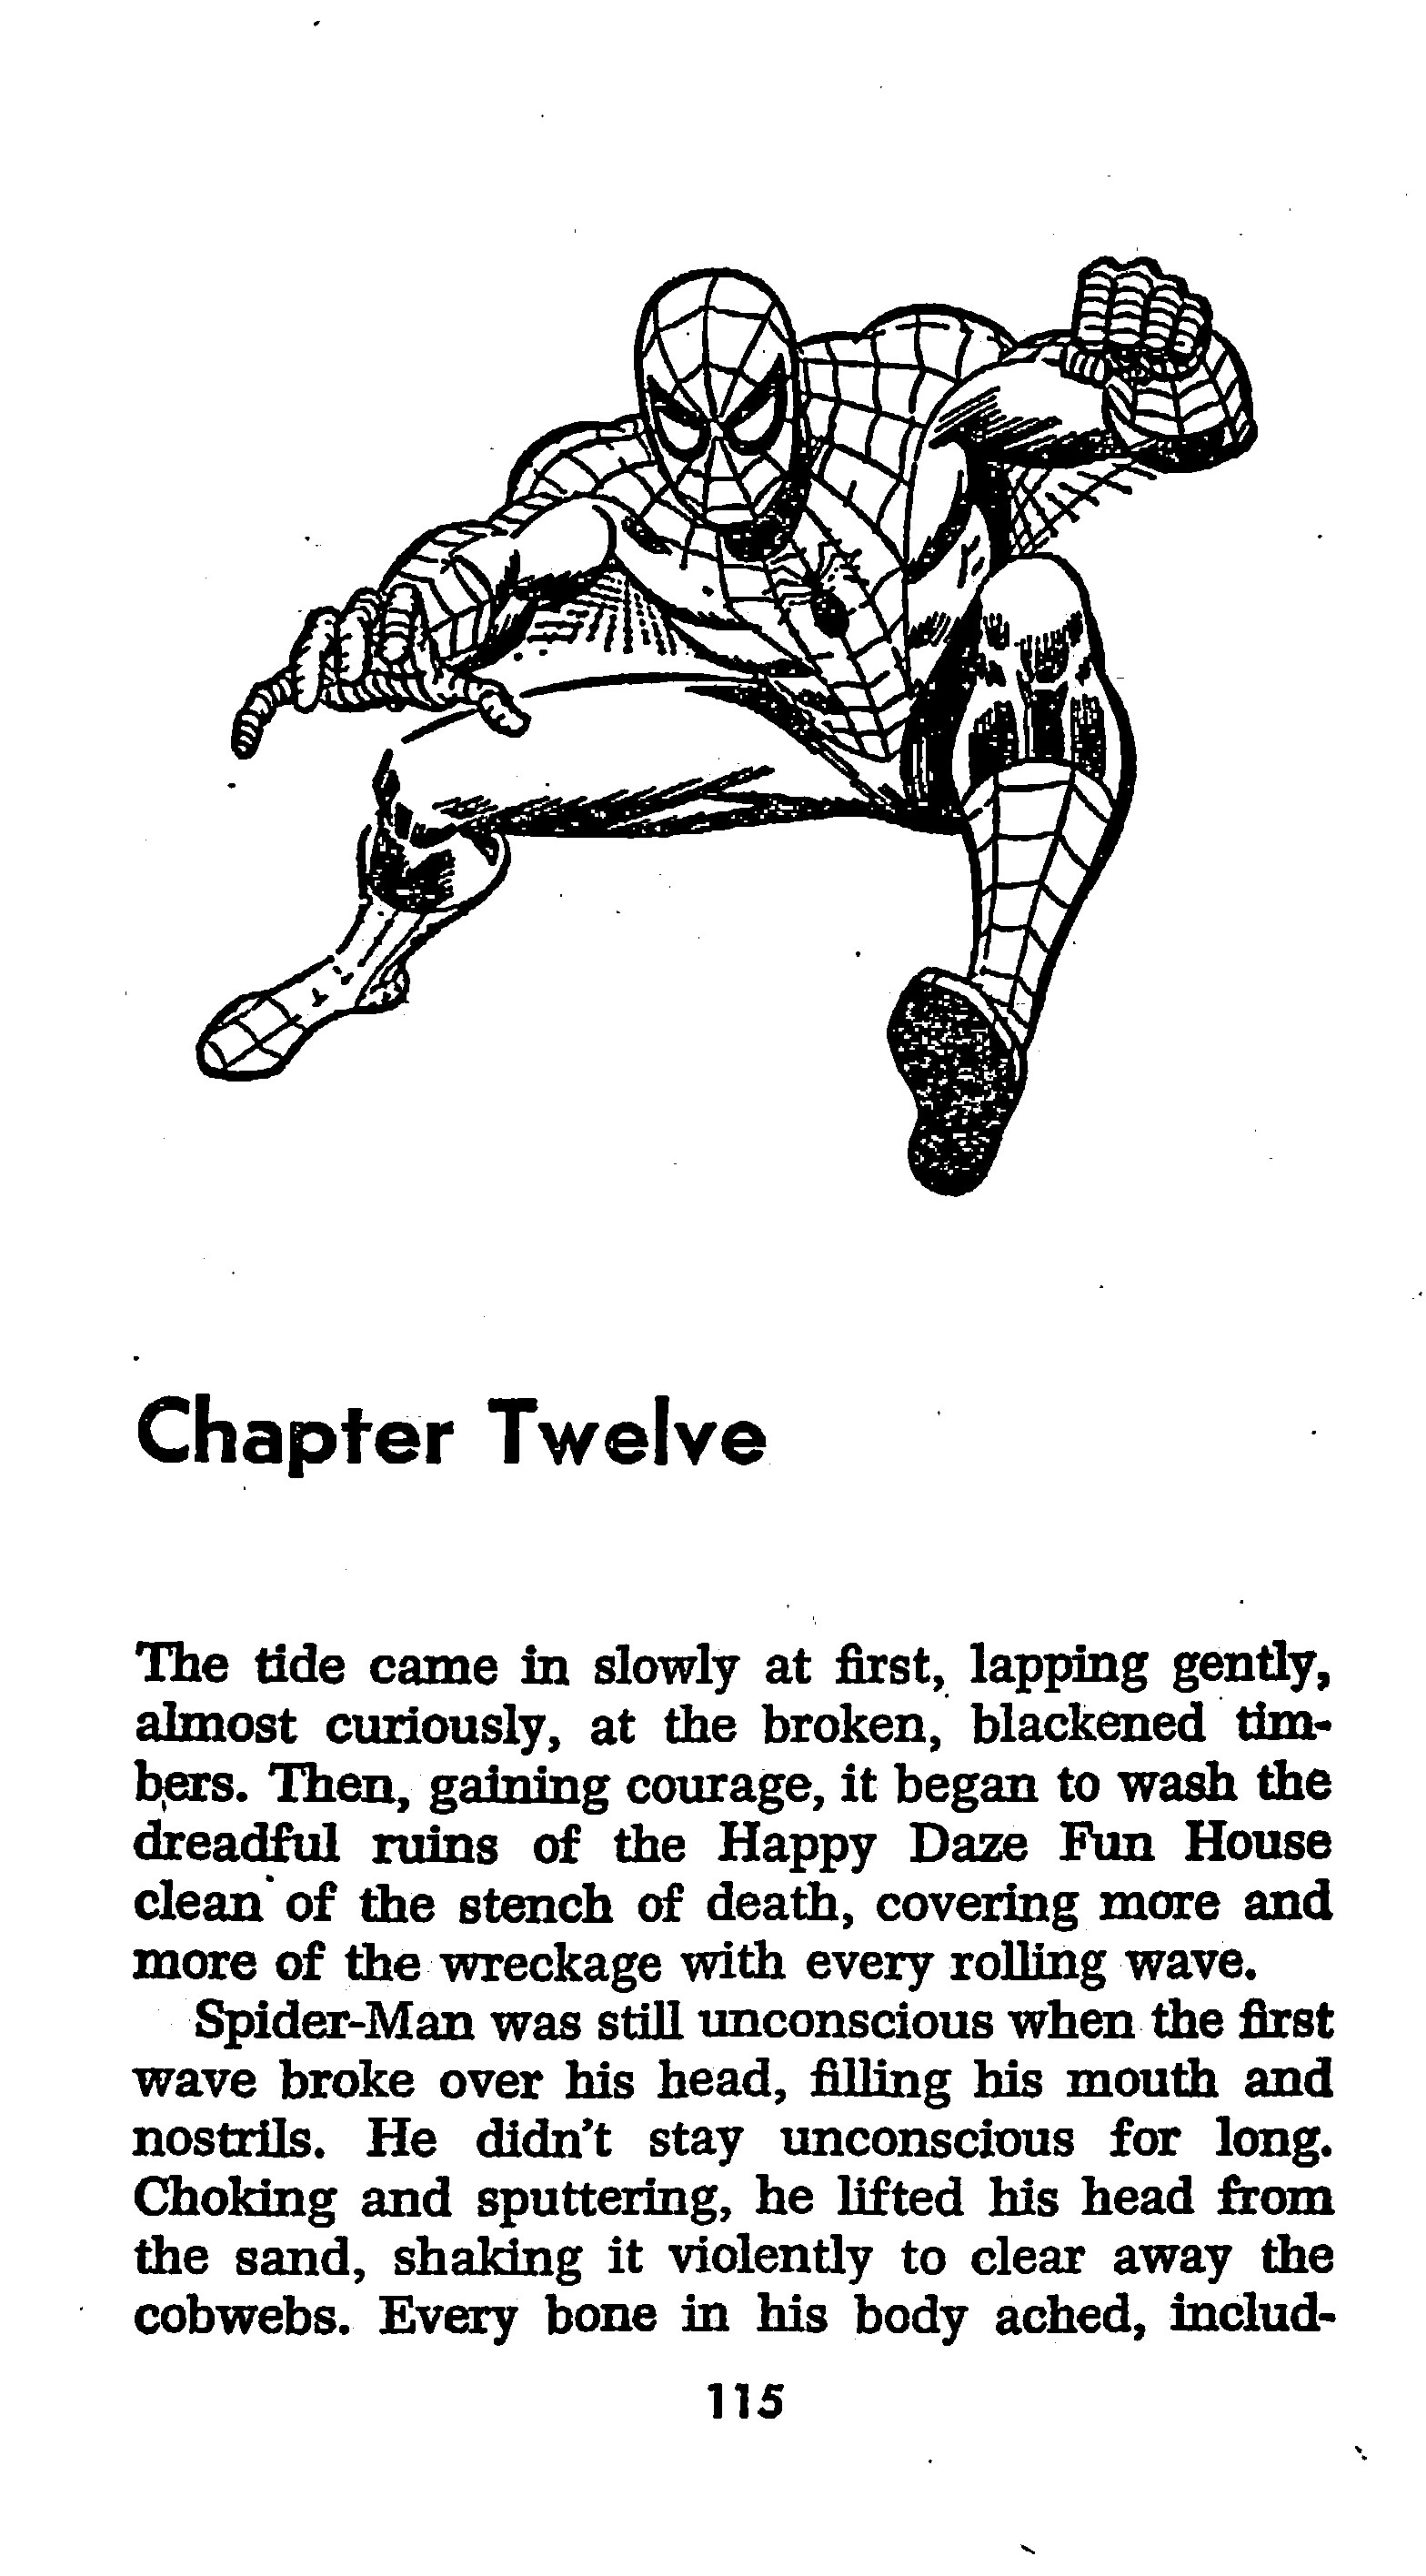 Read online The Amazing Spider-Man: Mayhem in Manhattan comic -  Issue # TPB (Part 2) - 17